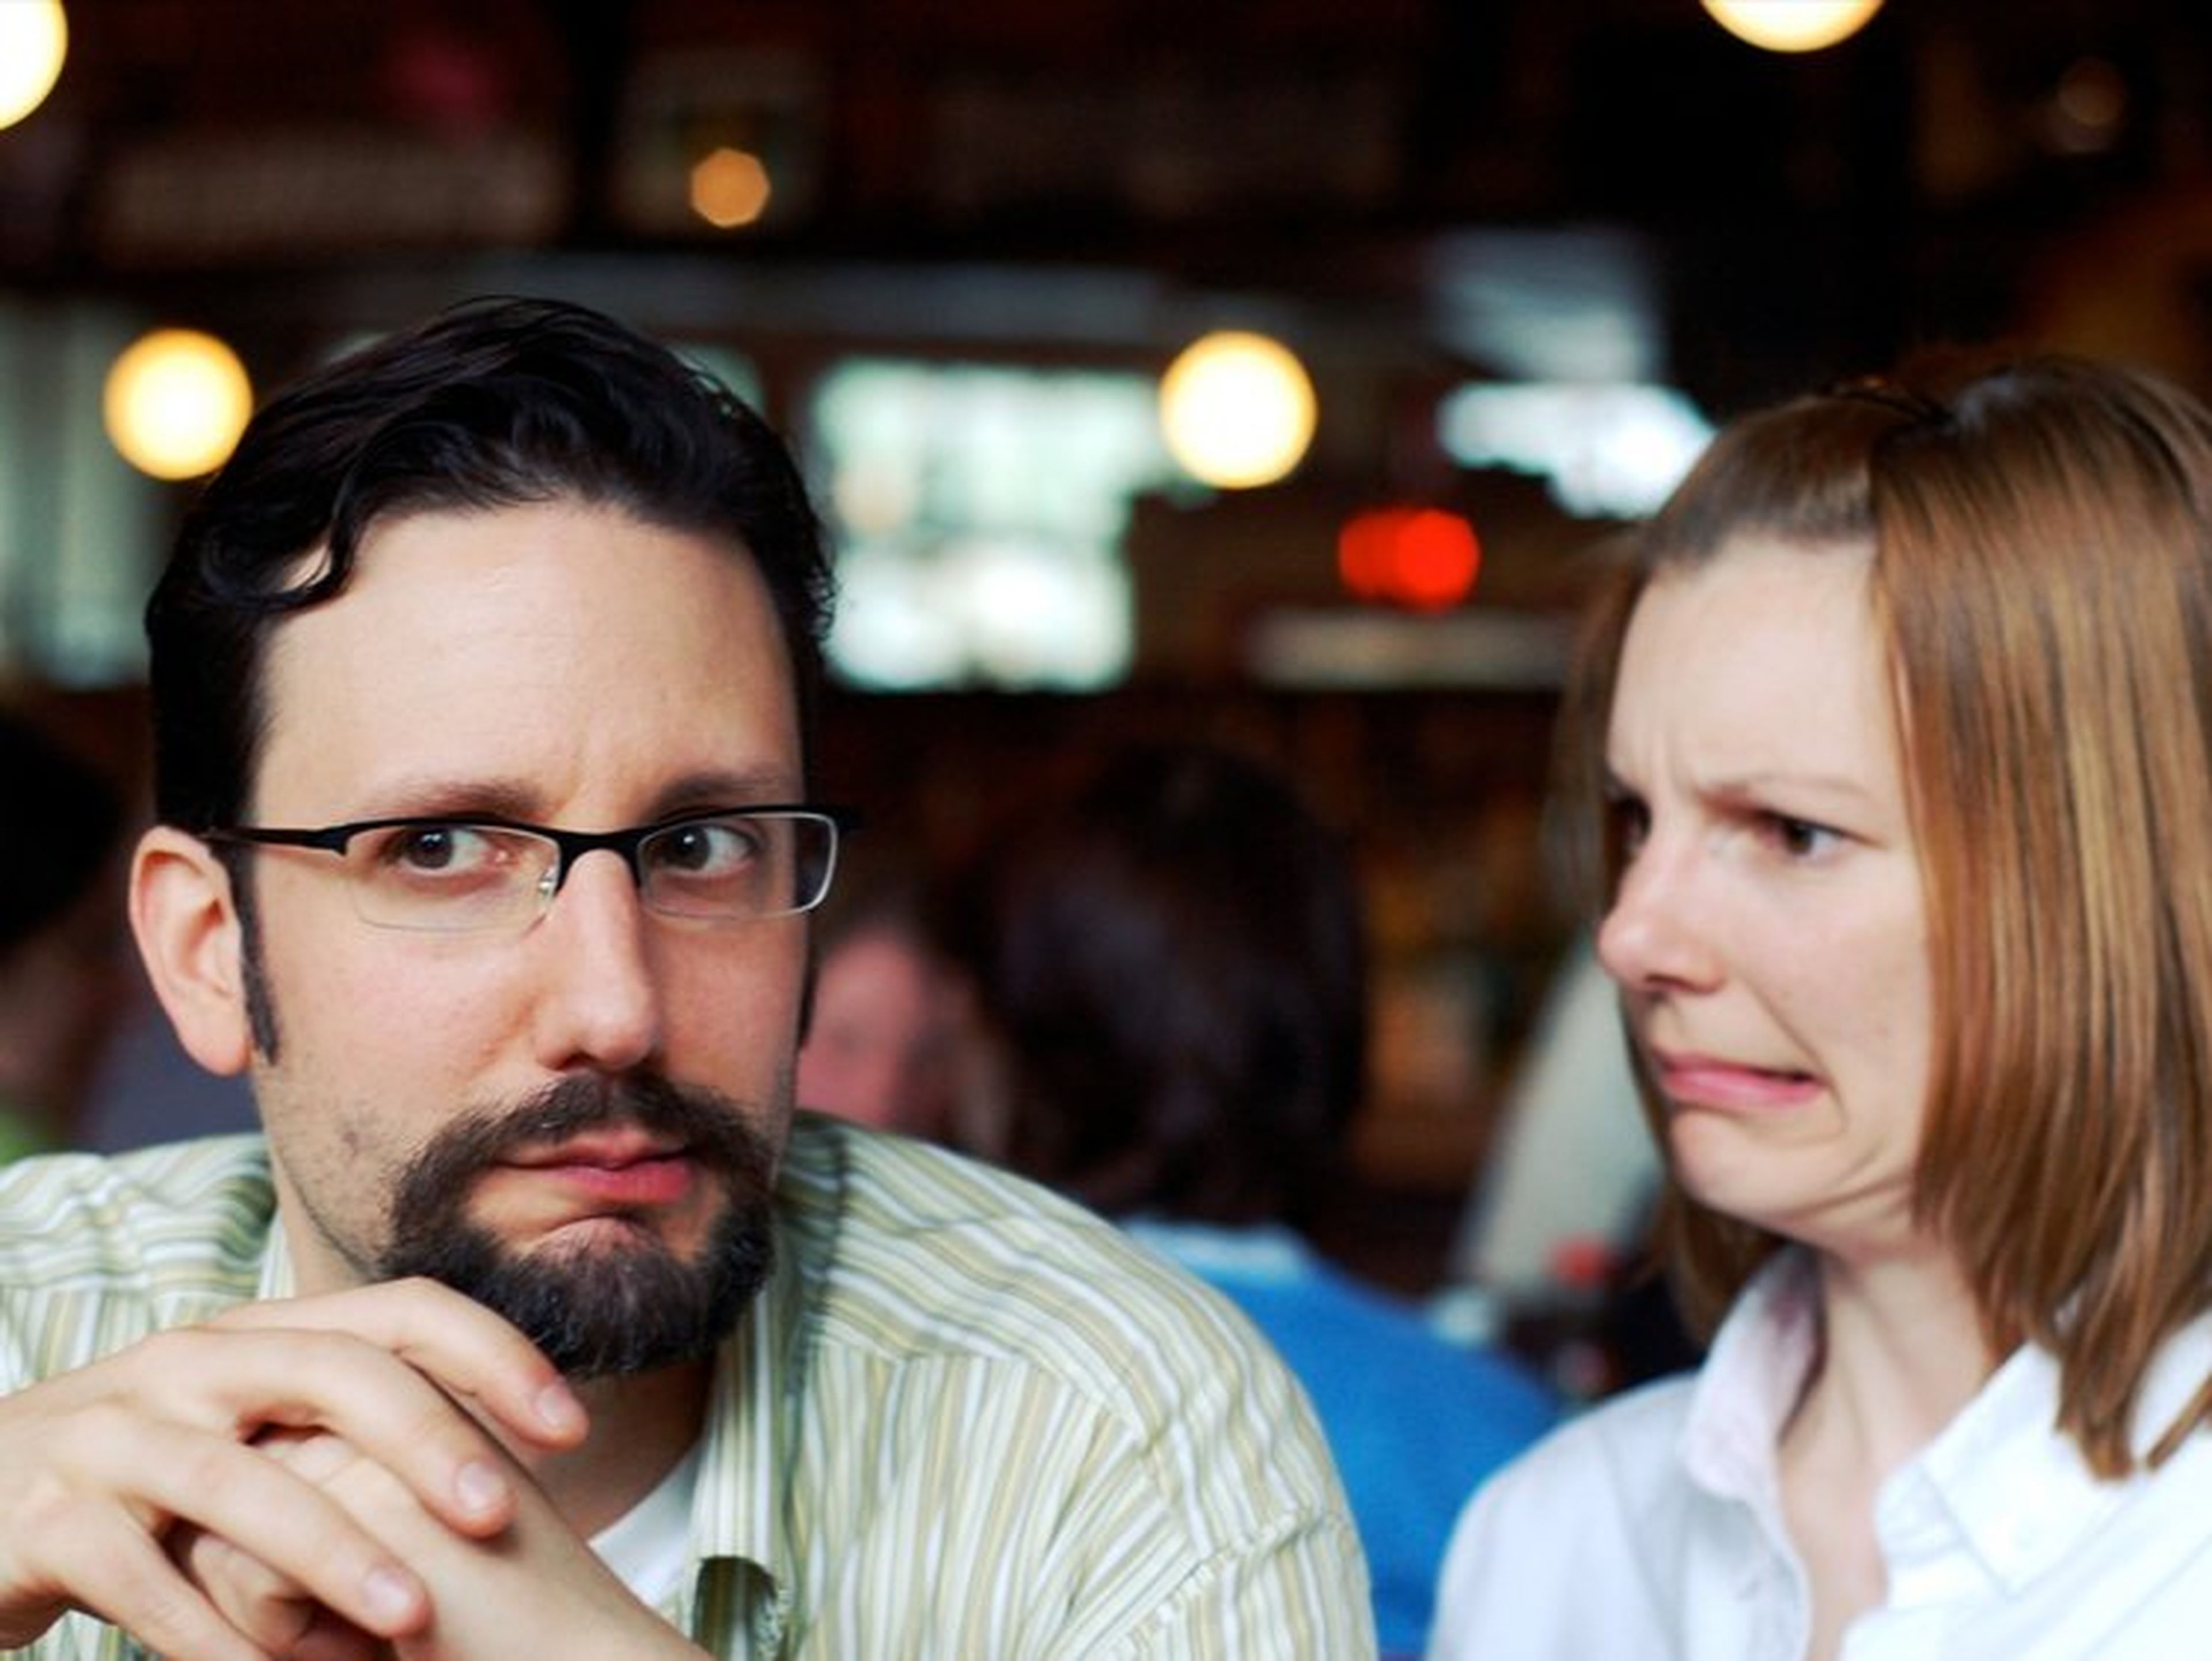 dos personas mirando de manera escéptica